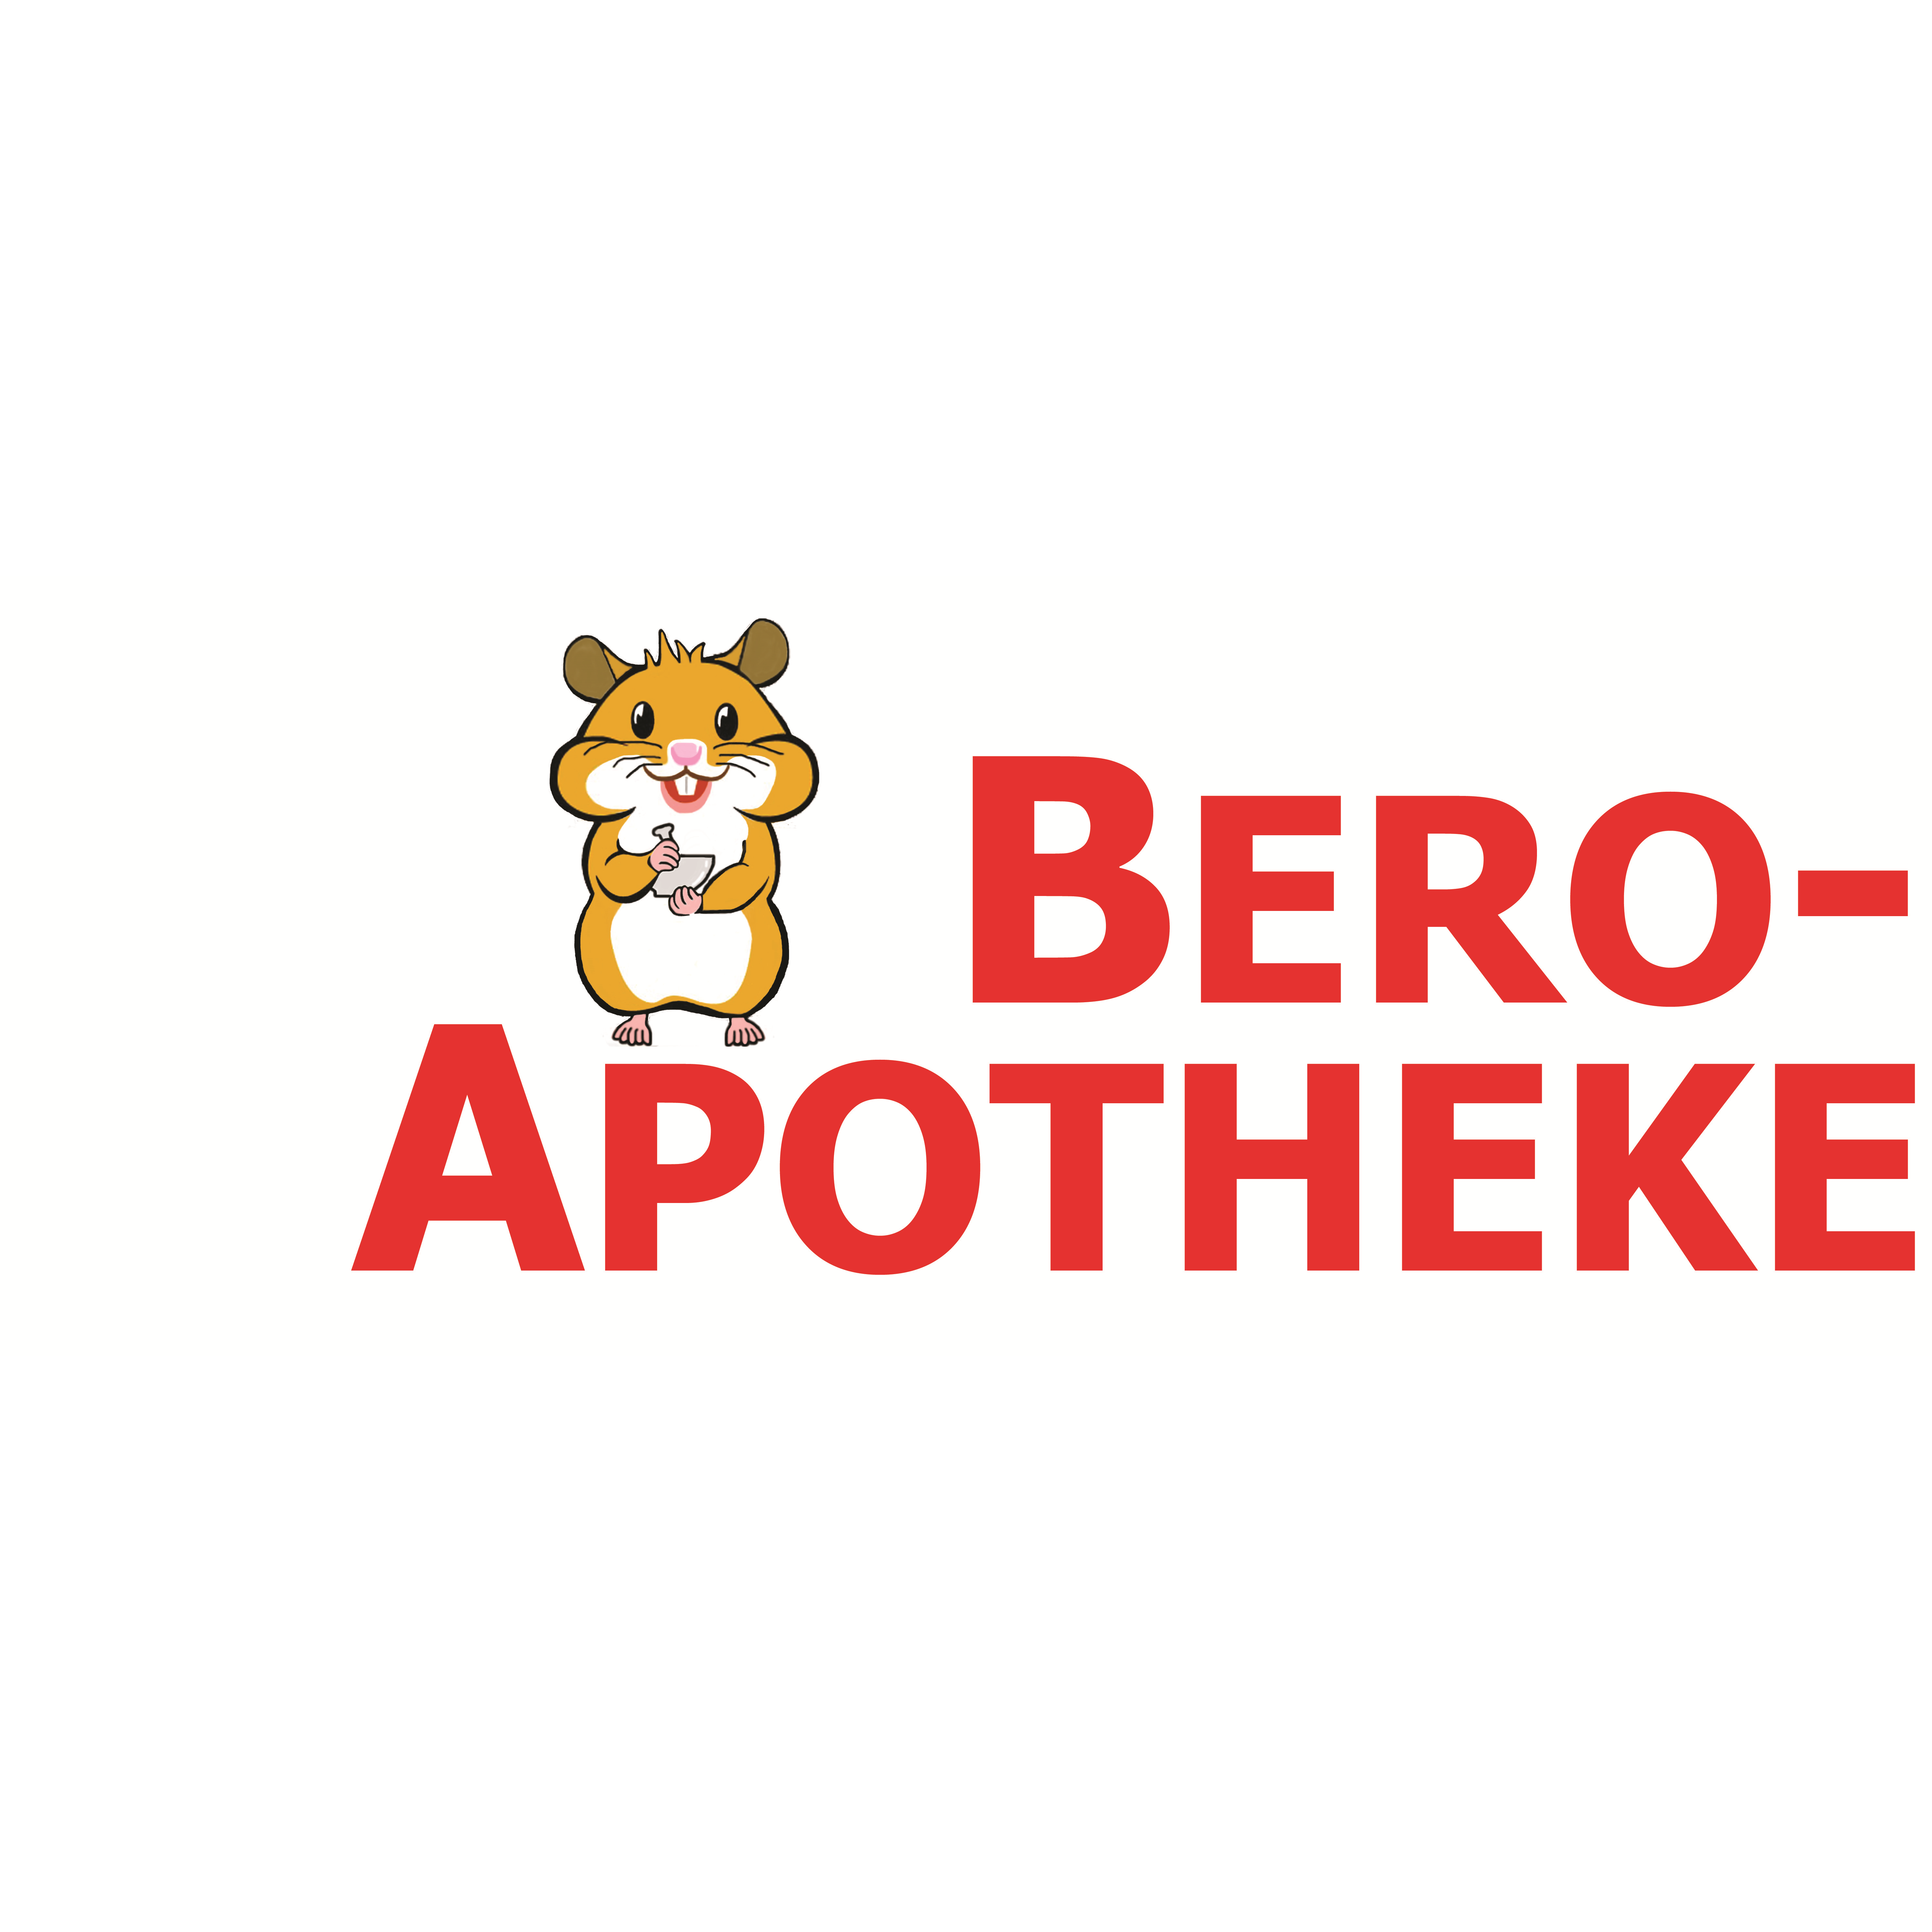 Bero-Apotheke in Oberhausen im Rheinland - Logo